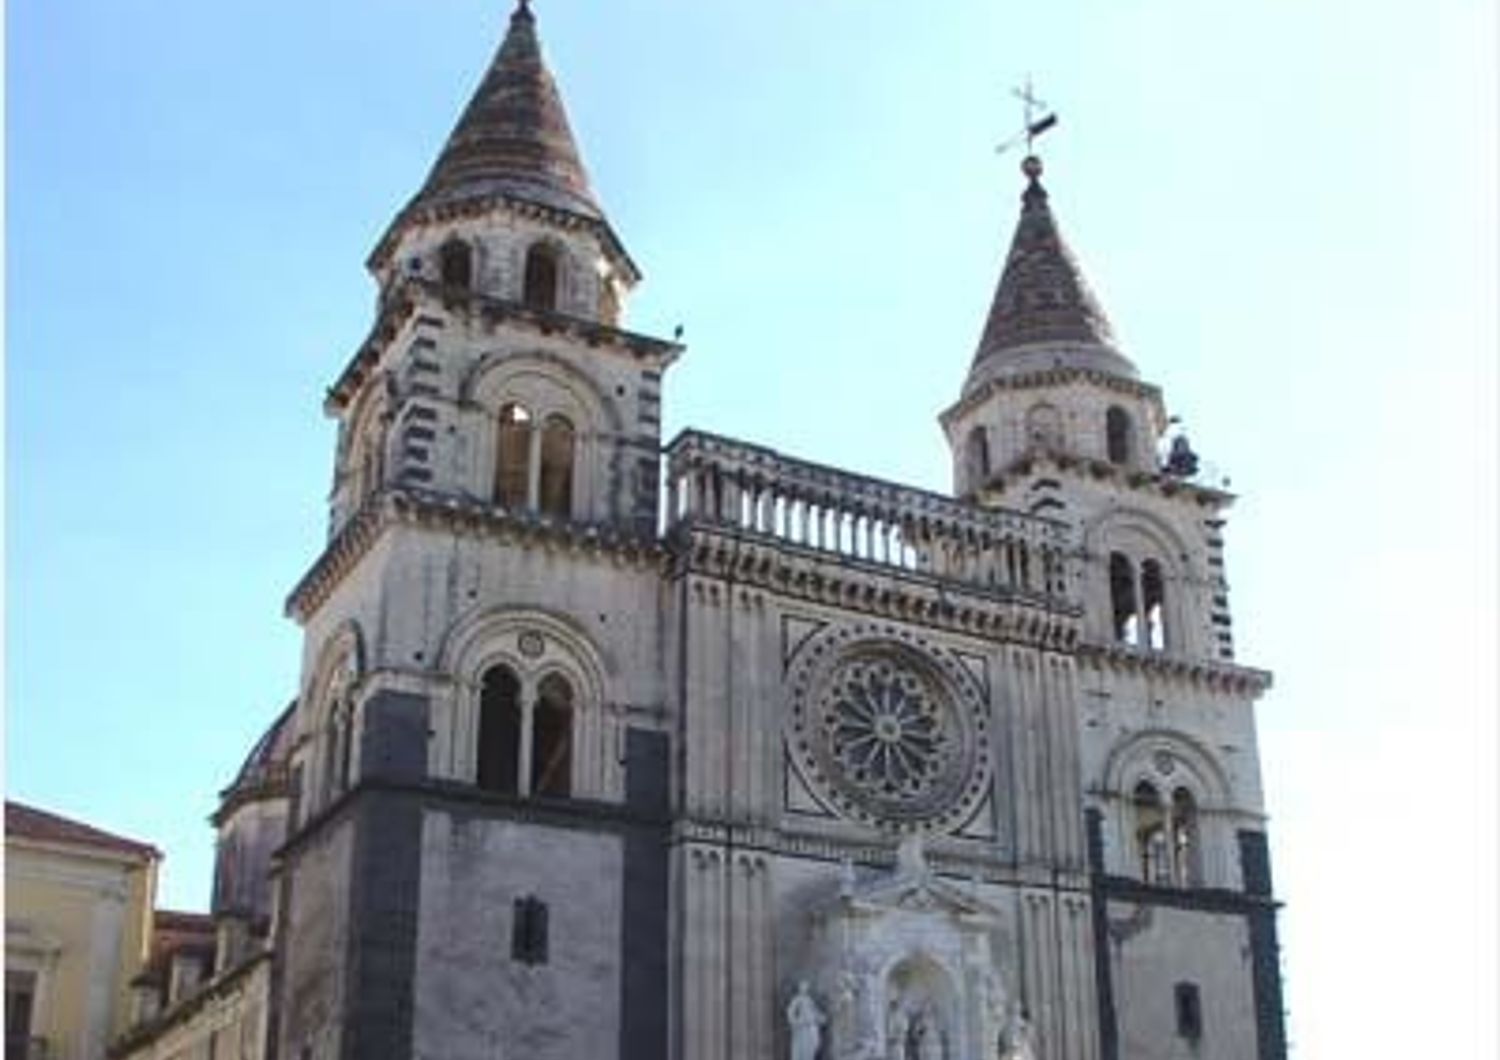 Il Duomo di Acireale